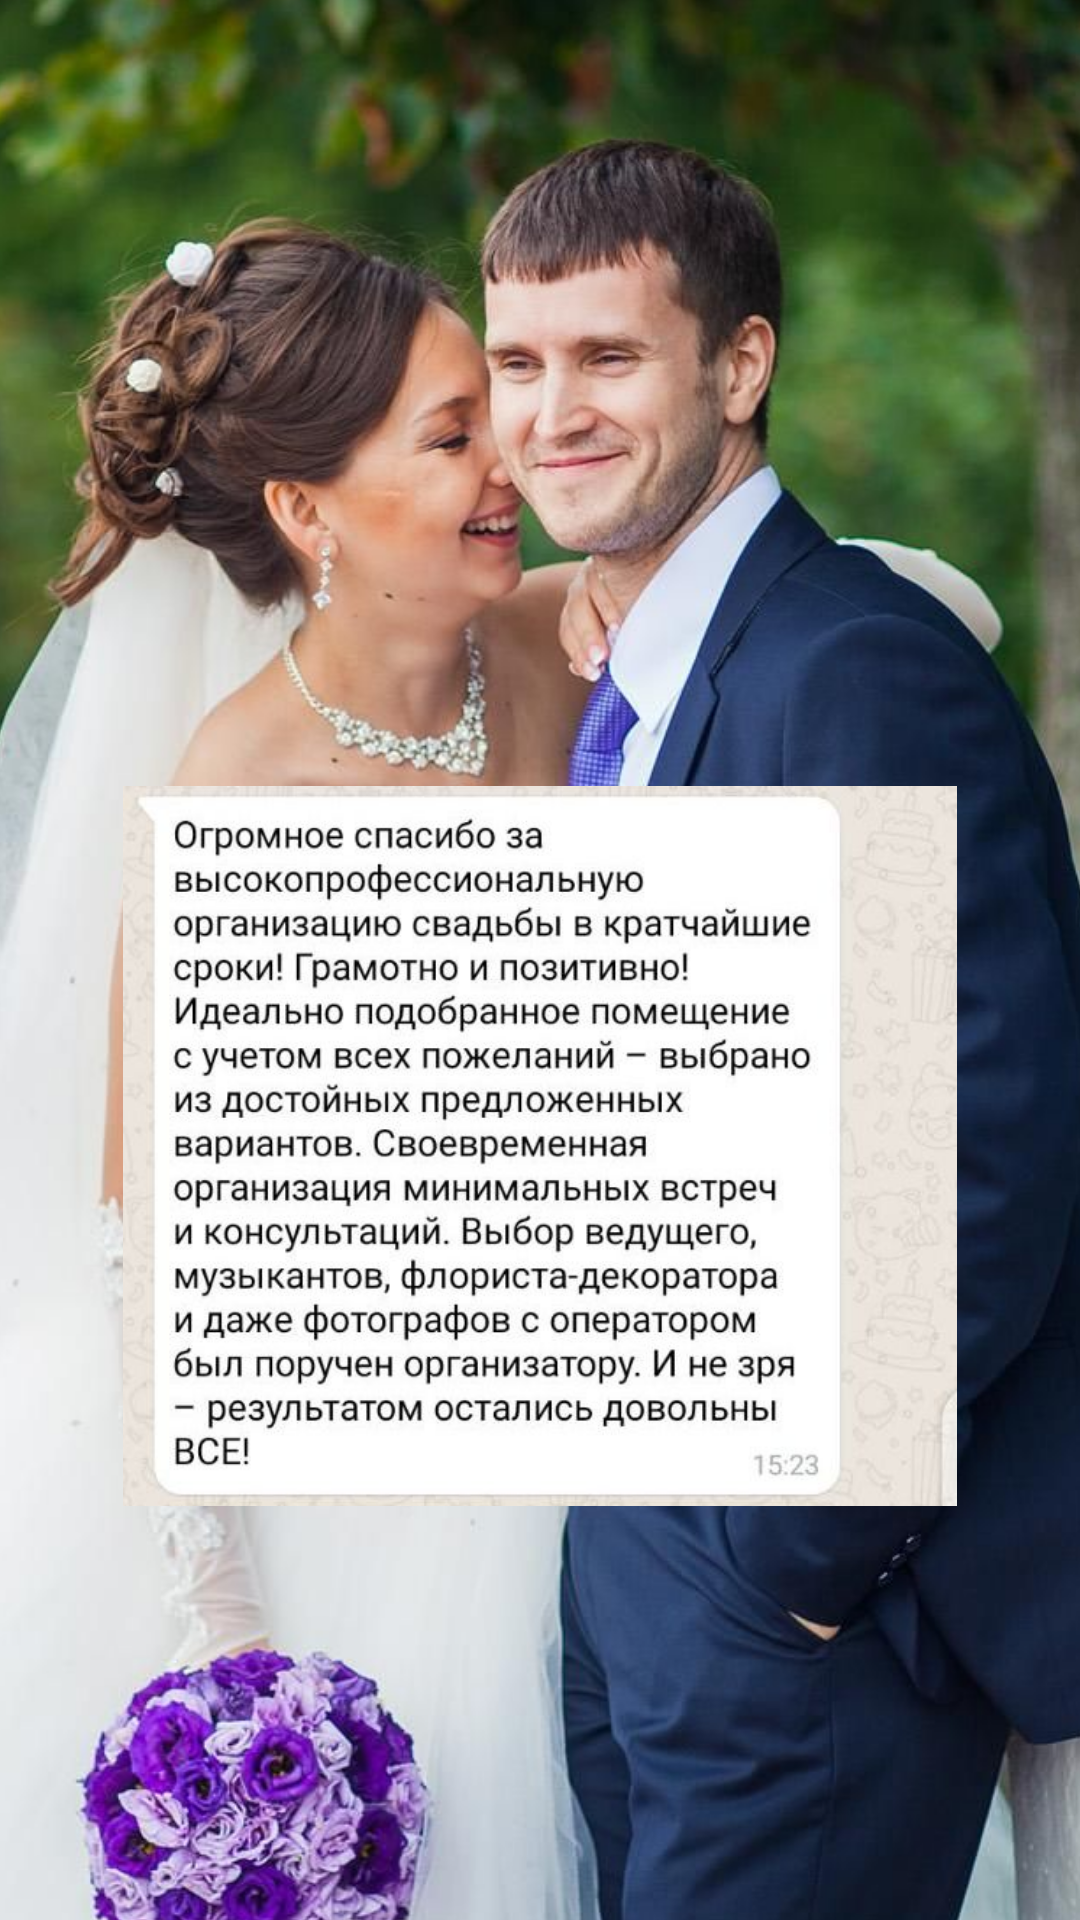 Организация свадьбы в Сочи
от компании Pandaevent